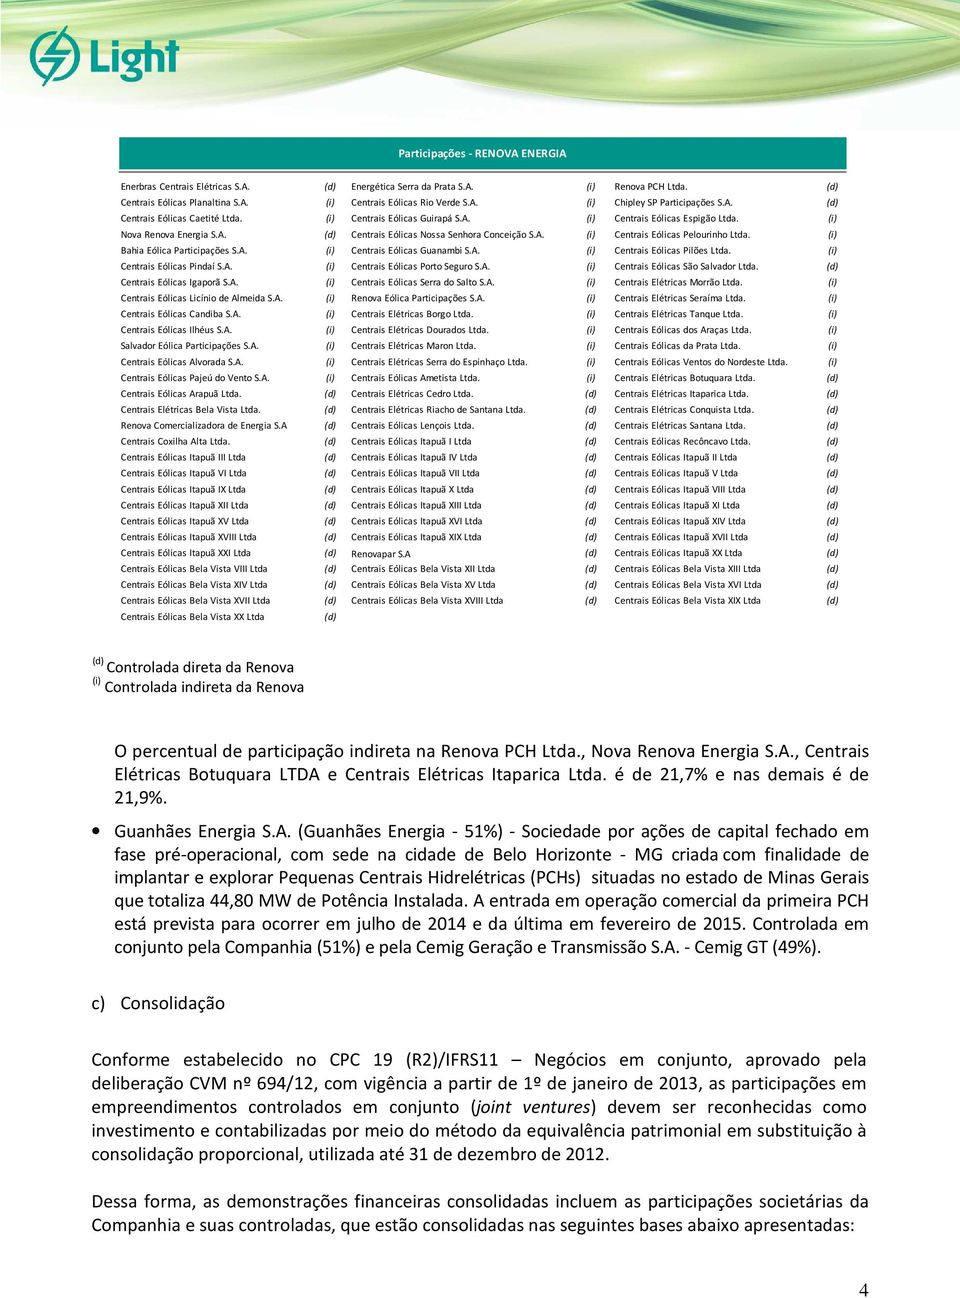 (i) Bahia Eólica Participações S.A. (i) Centrais Eólicas Guanambi S.A. (i) Centrais Eólicas Pilões Ltda. (i) Centrais Eólicas Pindaí S.A. (i) Centrais Eólicas Porto Seguro S.A. (i) Centrais Eólicas São Salvador Ltda.